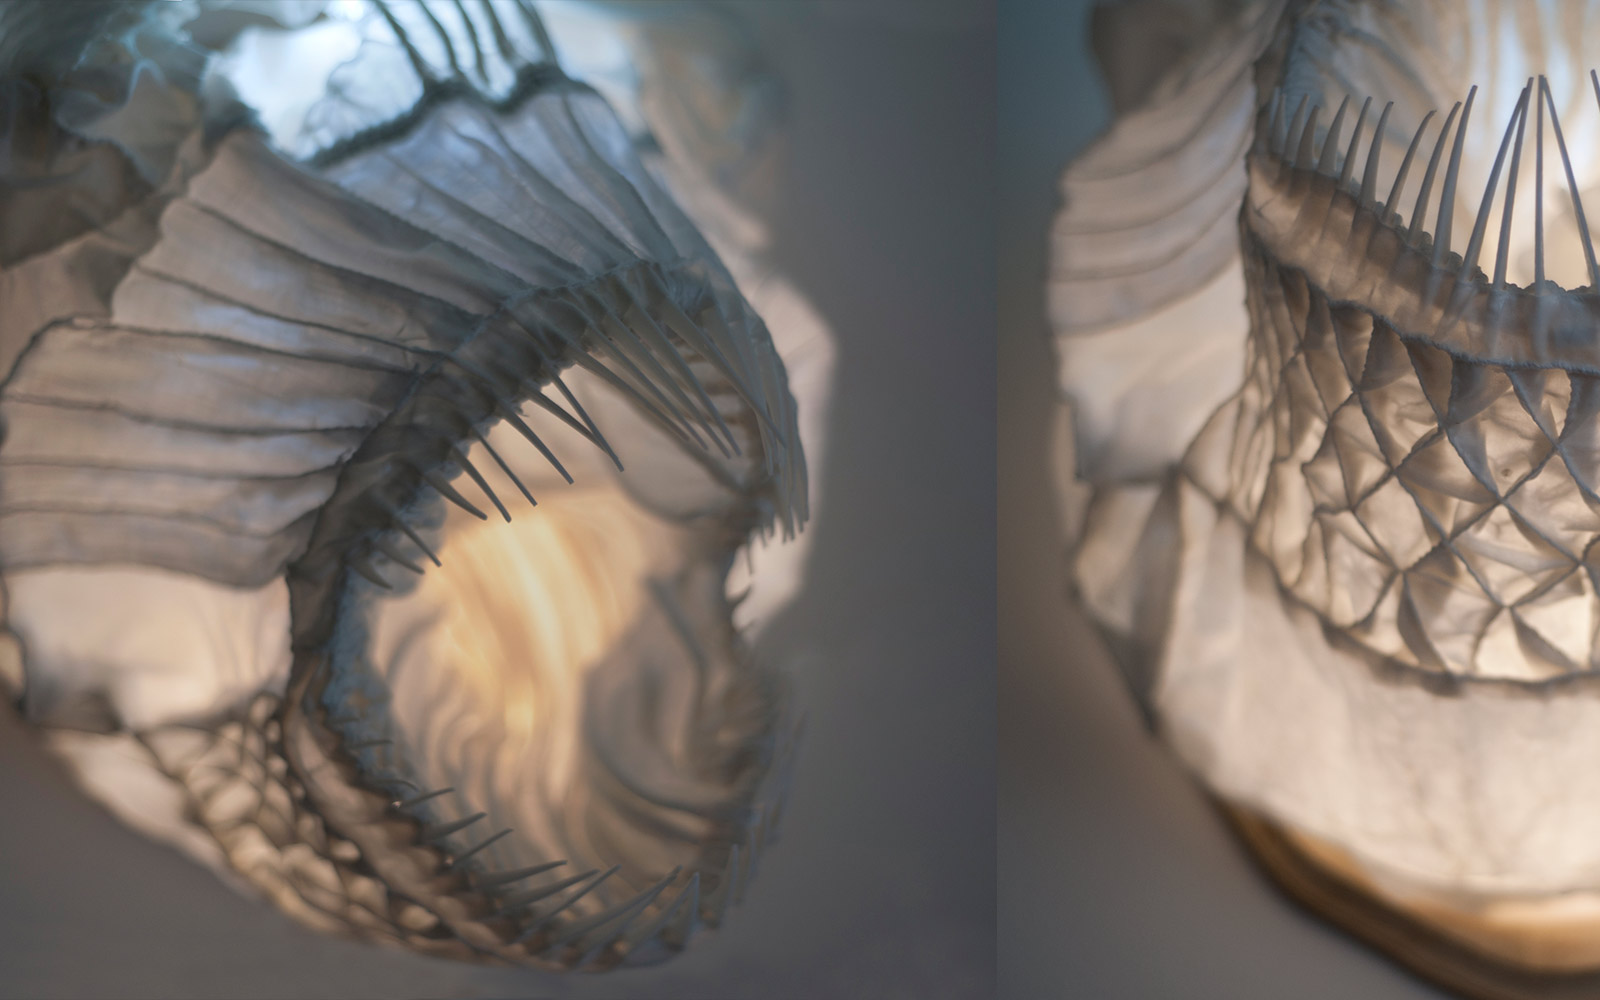 Dračí ryba — designové nástěnné světlo od Spacelights